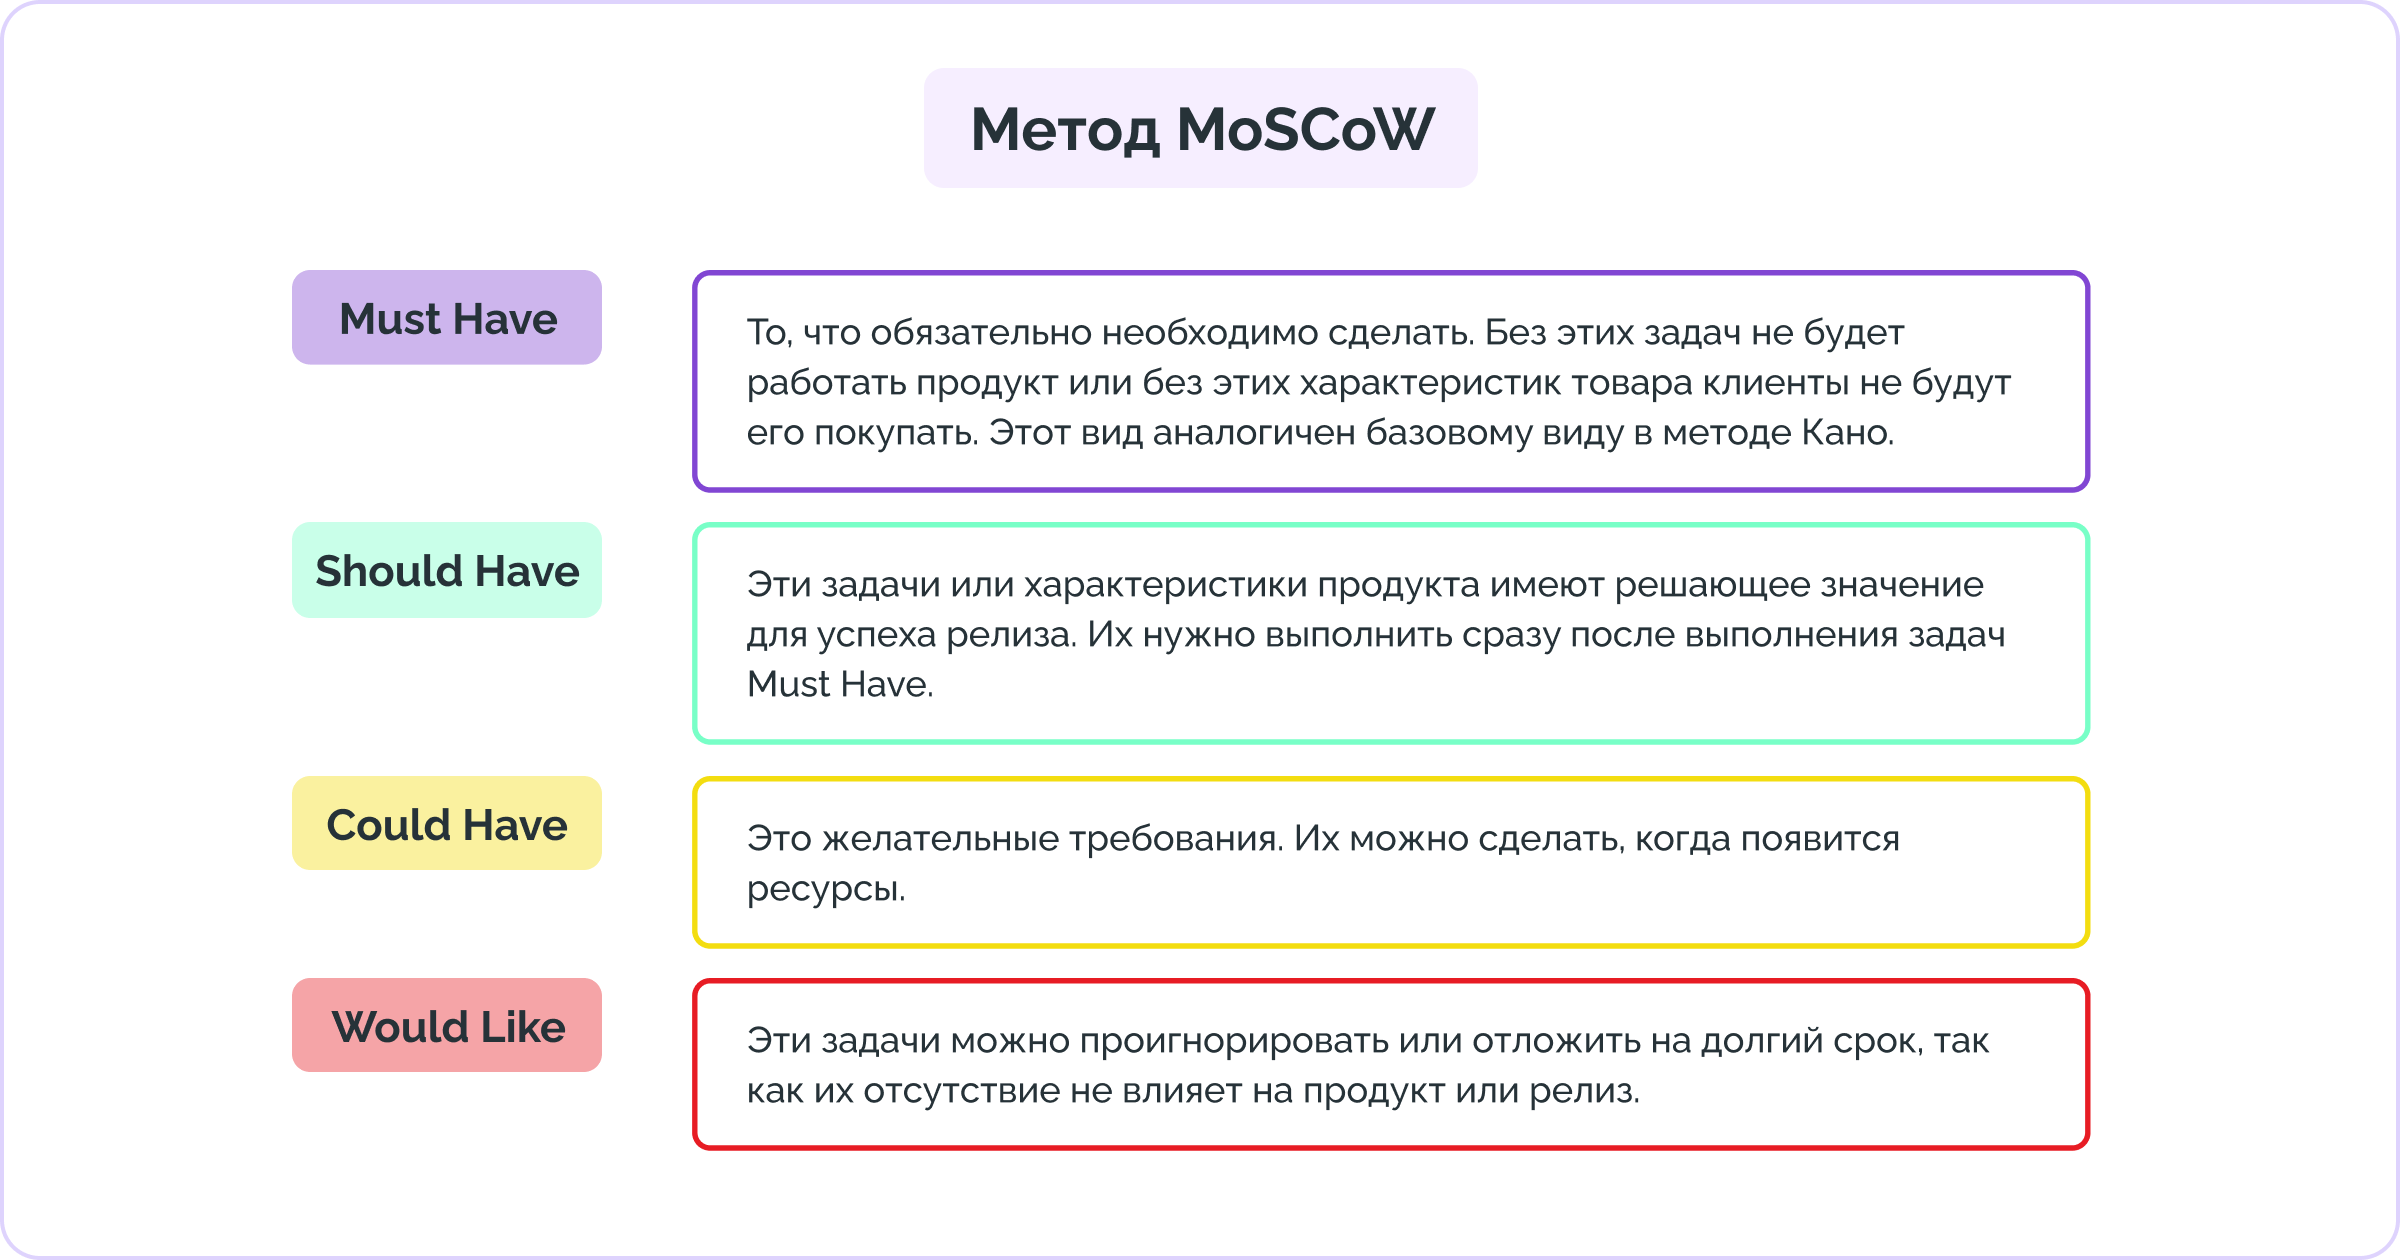 Как выглядит матрица MoSCoW